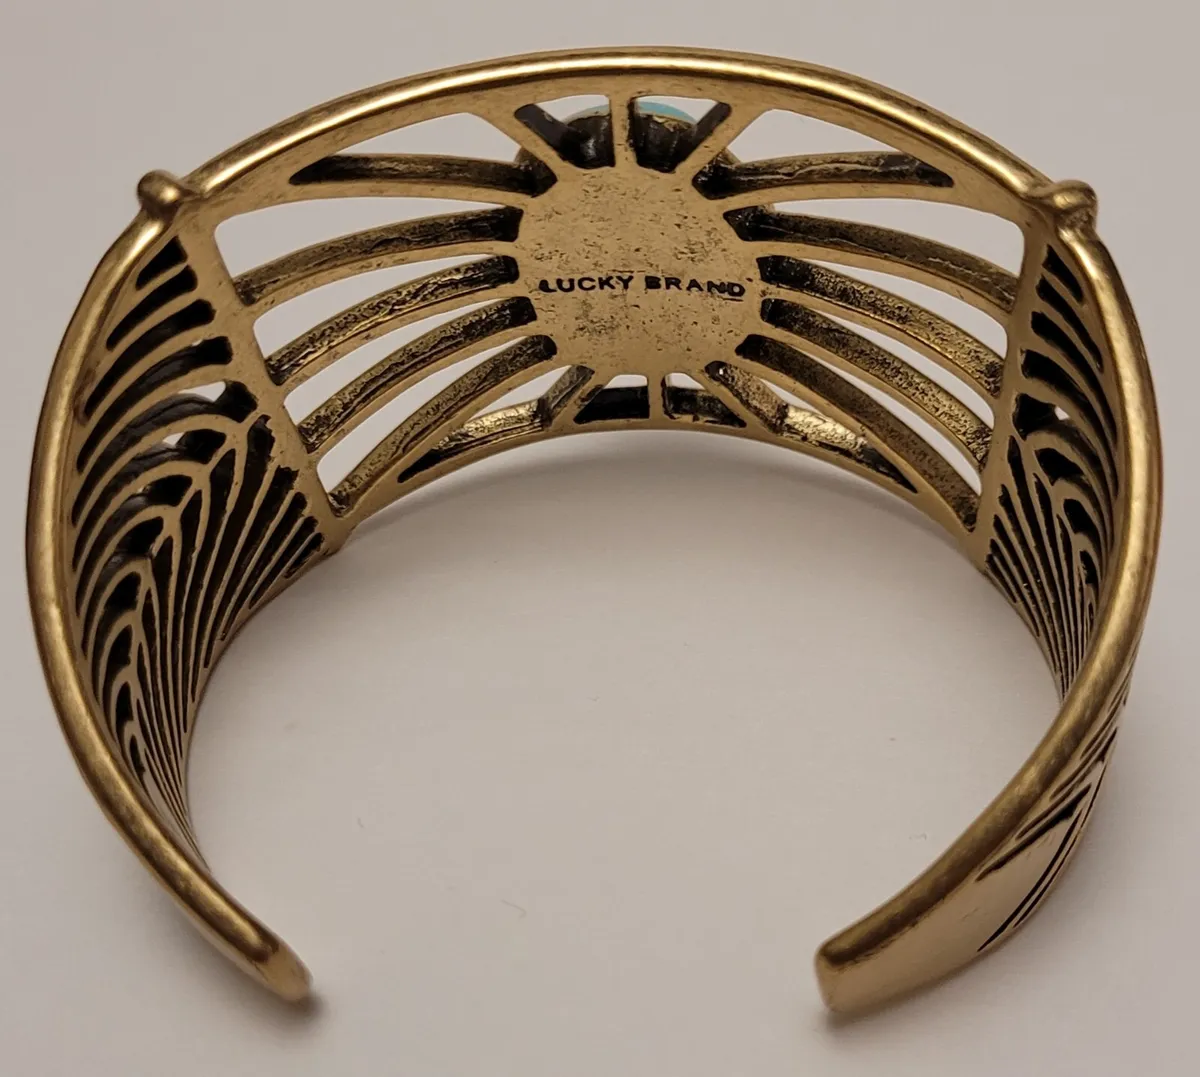 Lucky Brand Vintage Brass Semi-precious Stone Cuff Bracelet